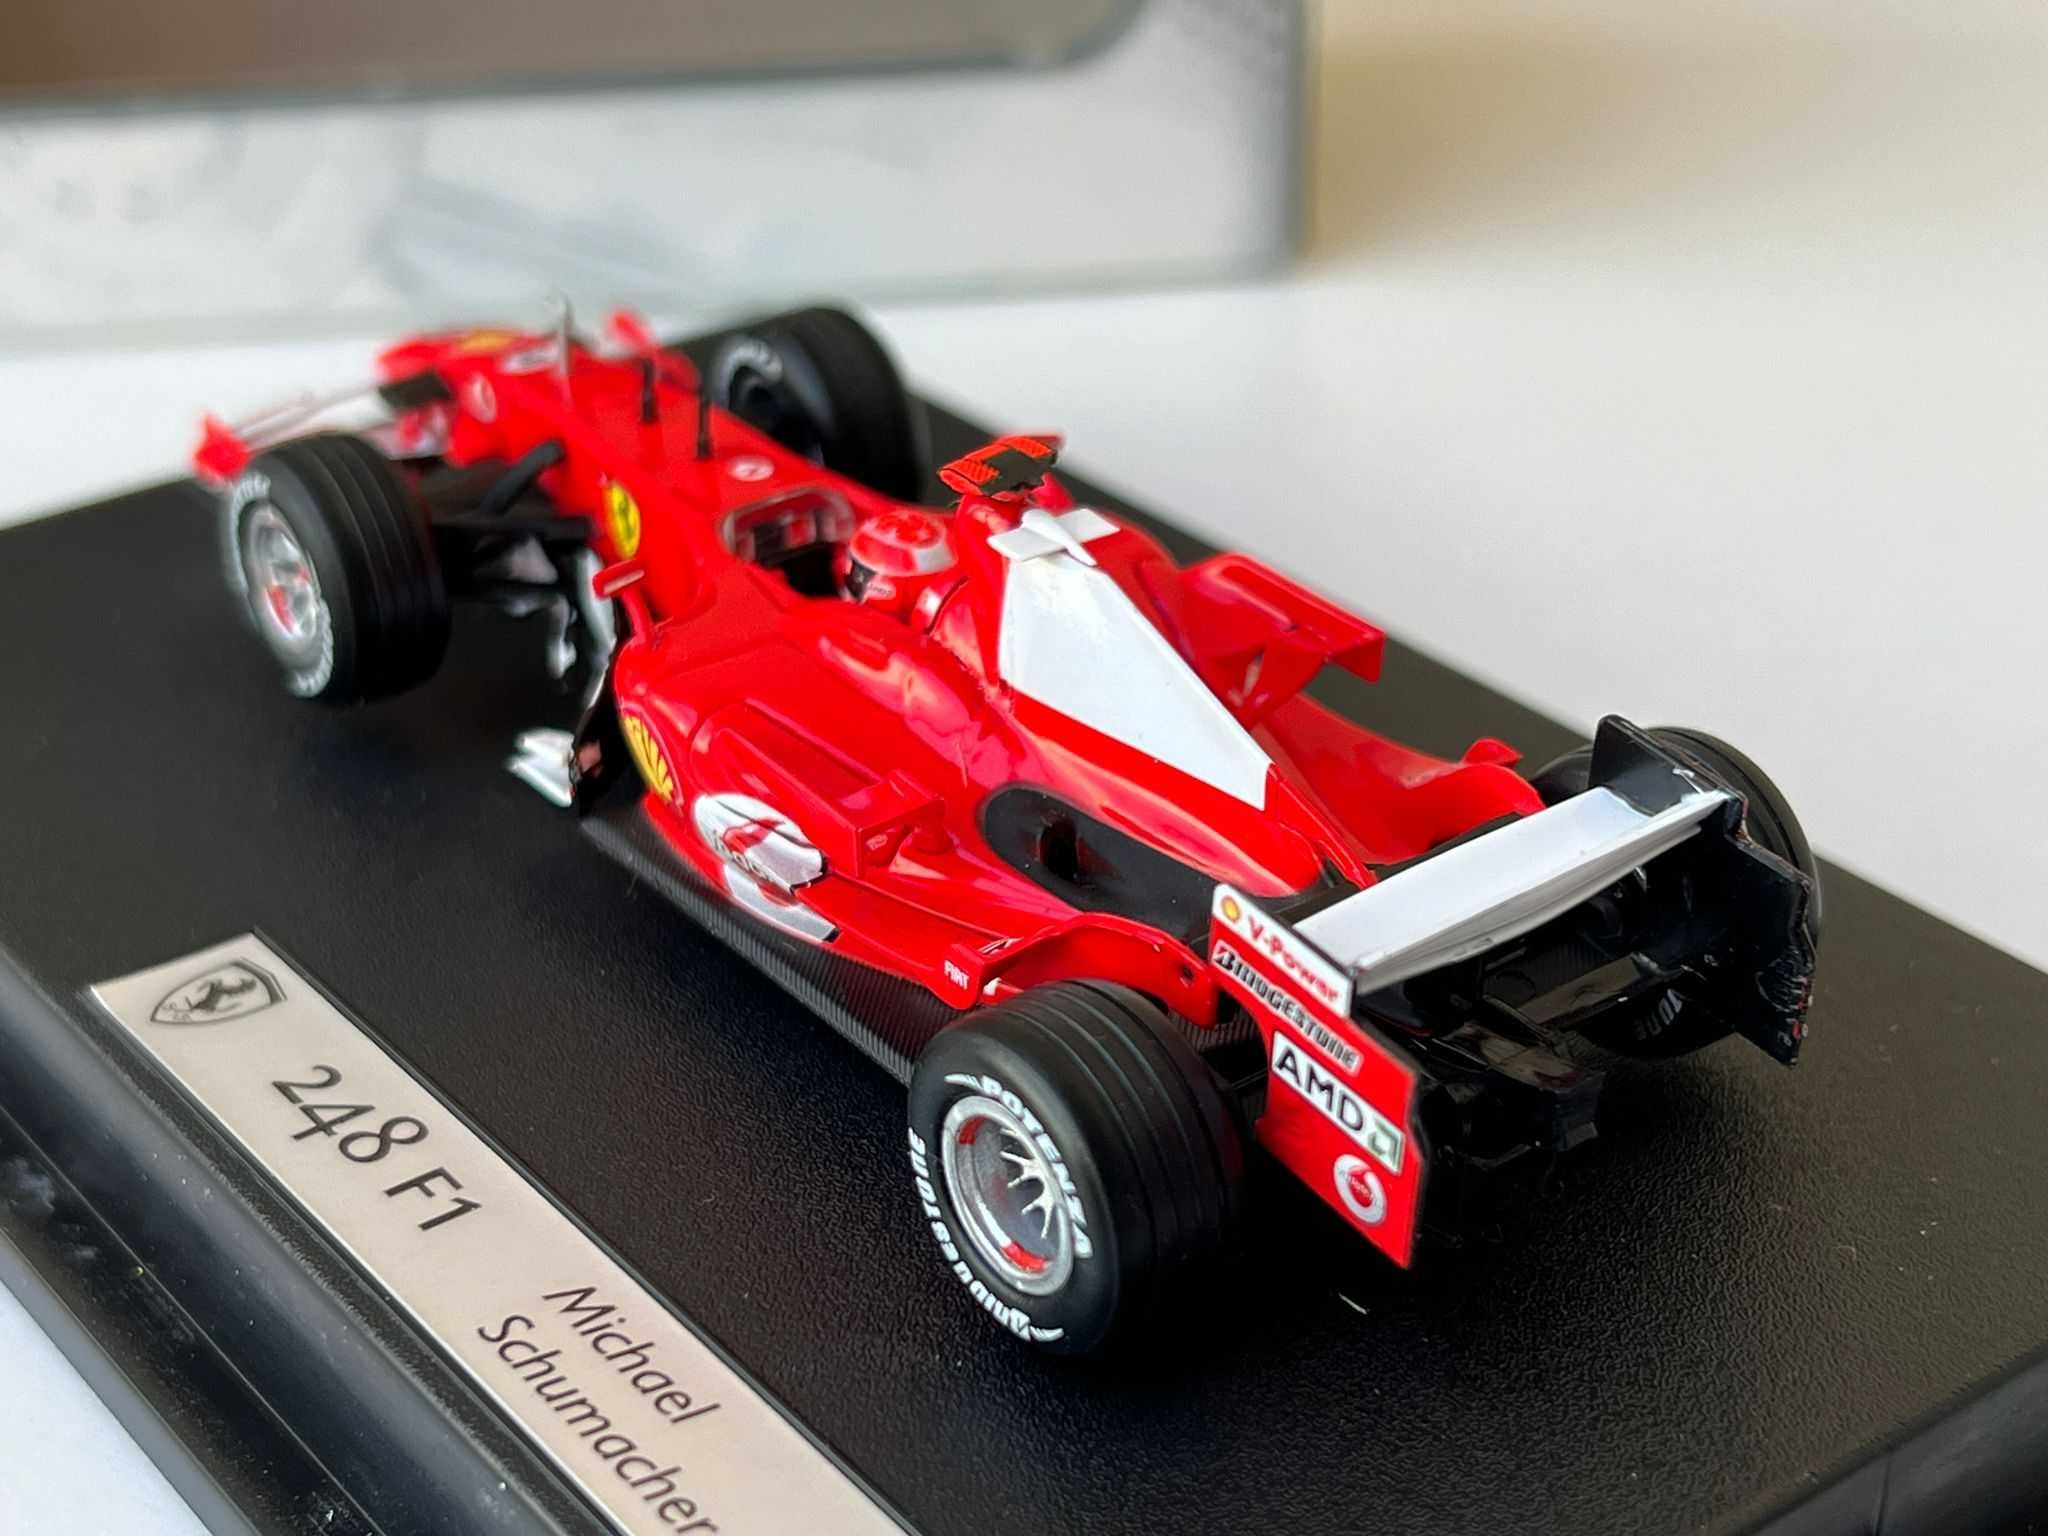 Macheta Auto 1/43 Hotwheels Ferrari F1 248 Michael Schumacher